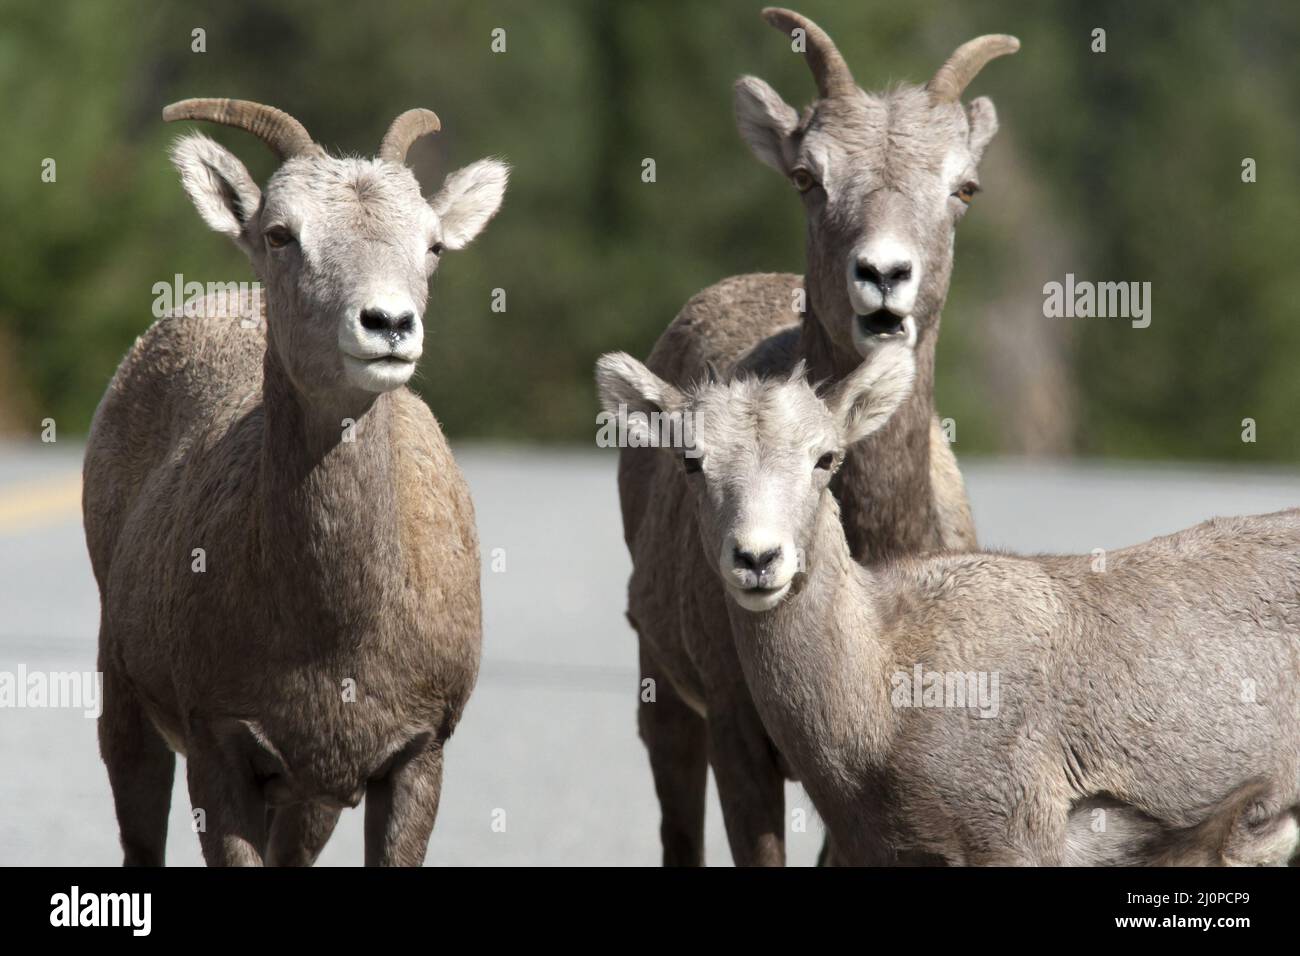 Closeup of bighorn sheep. Stock Photo